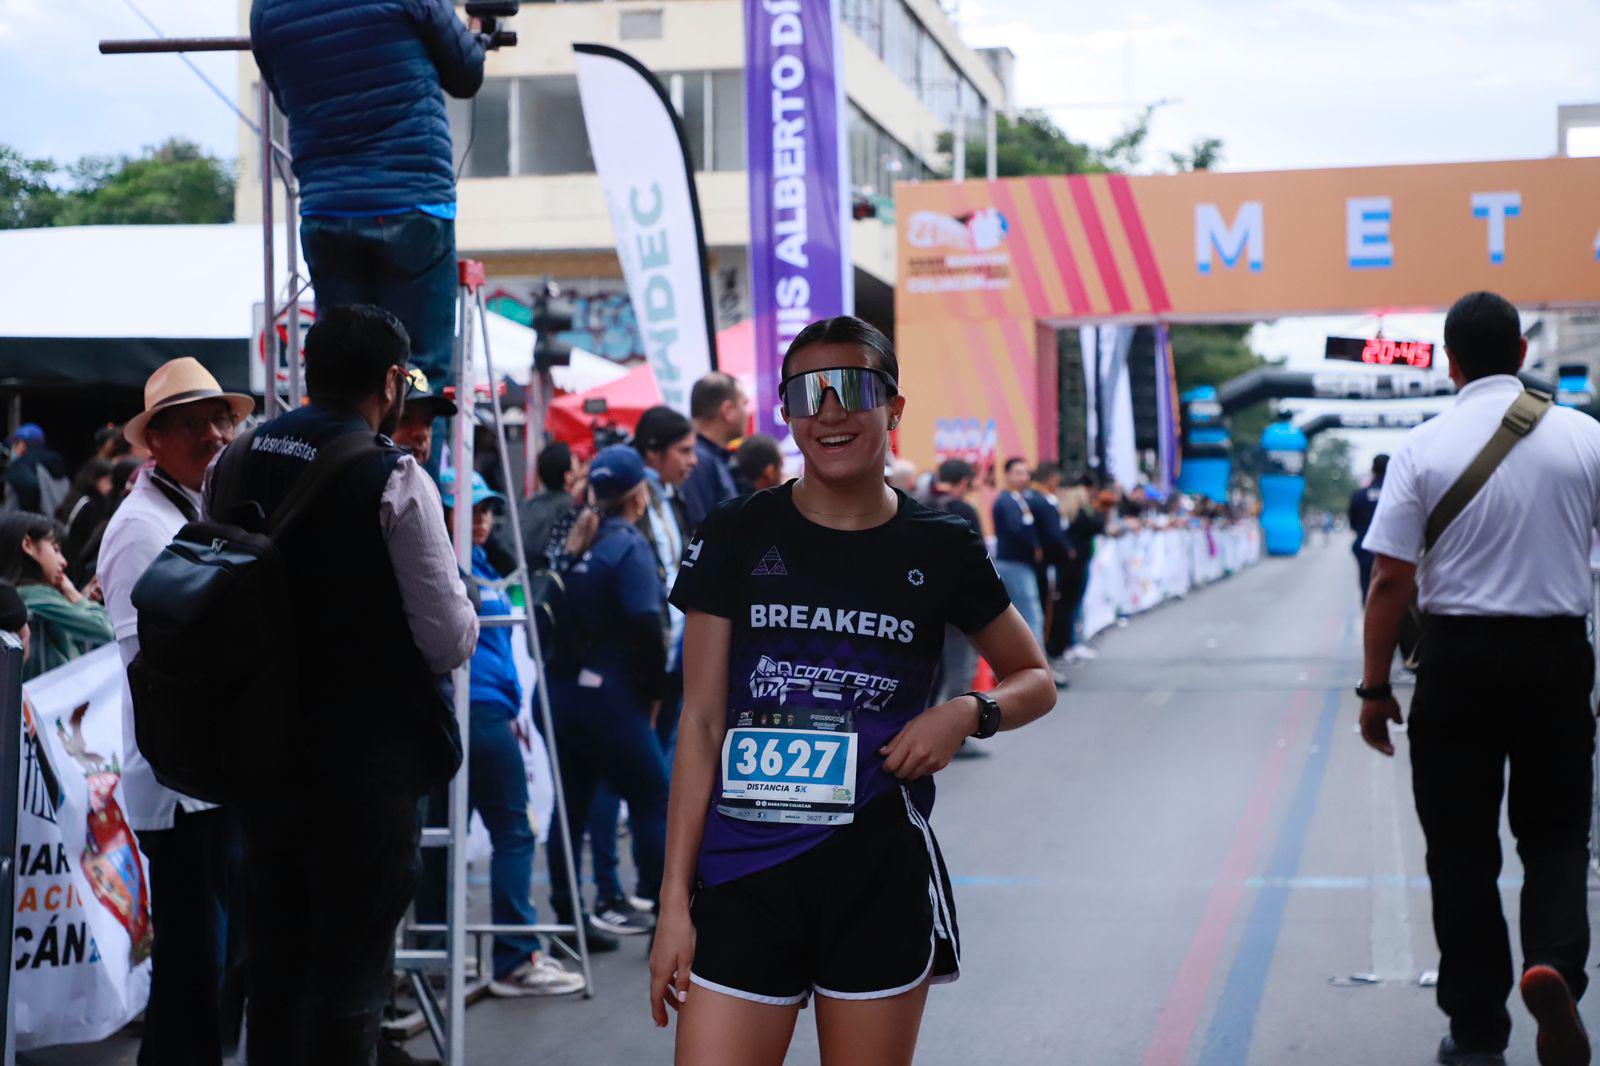 $!Mazatleca Norma Labrador conquista los 5K del Maratón de Culiacán